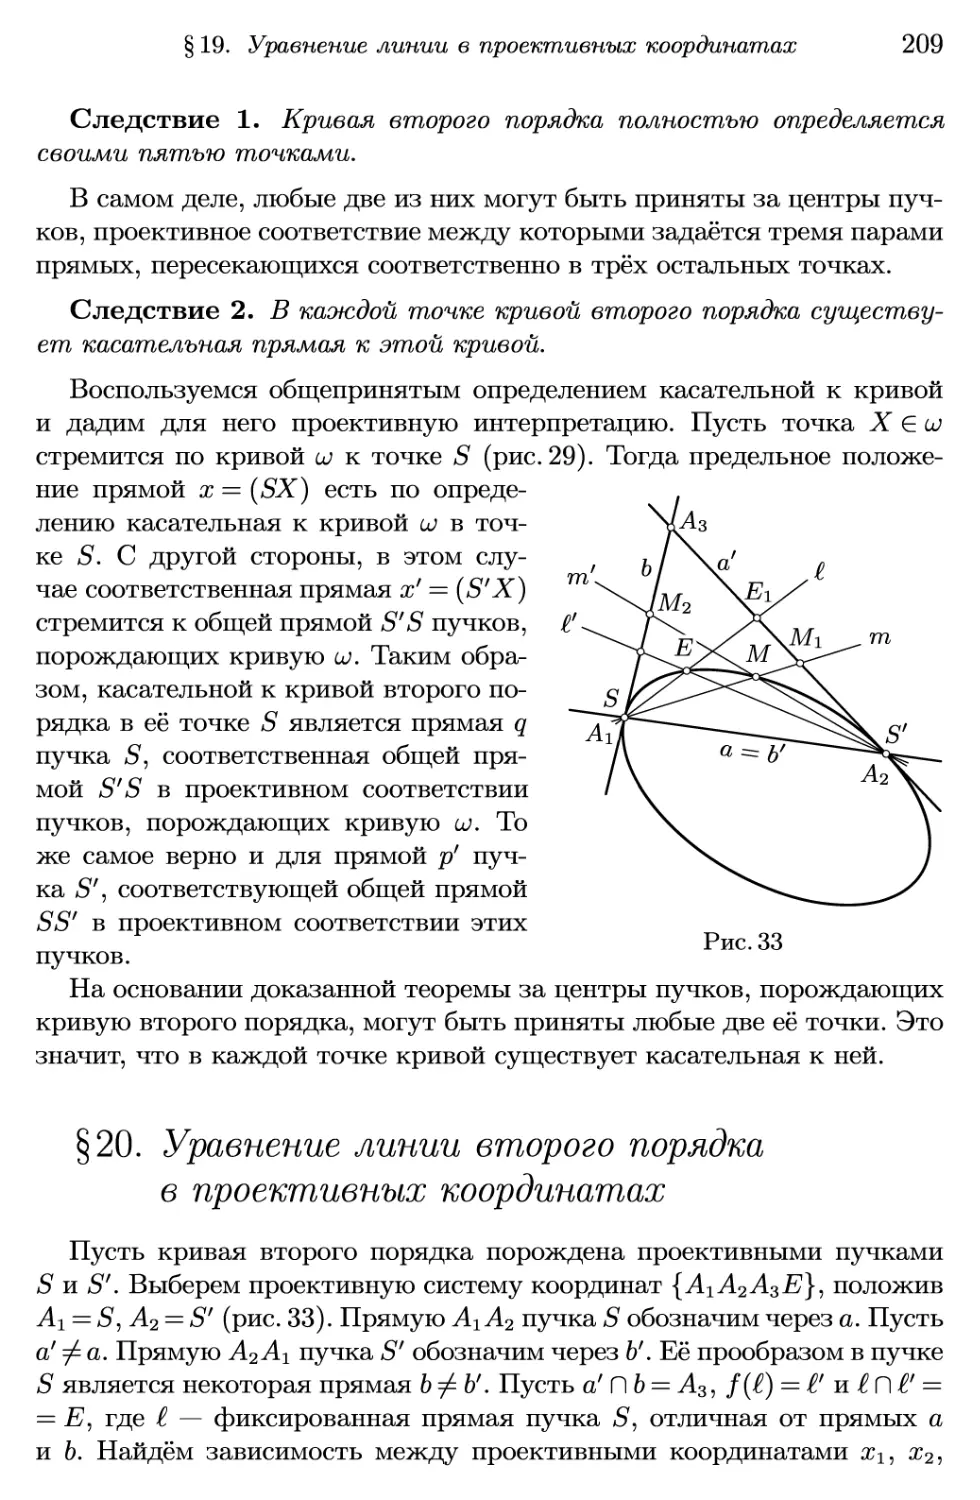 §20. Уравнение линии второго порядка в проективных координатах